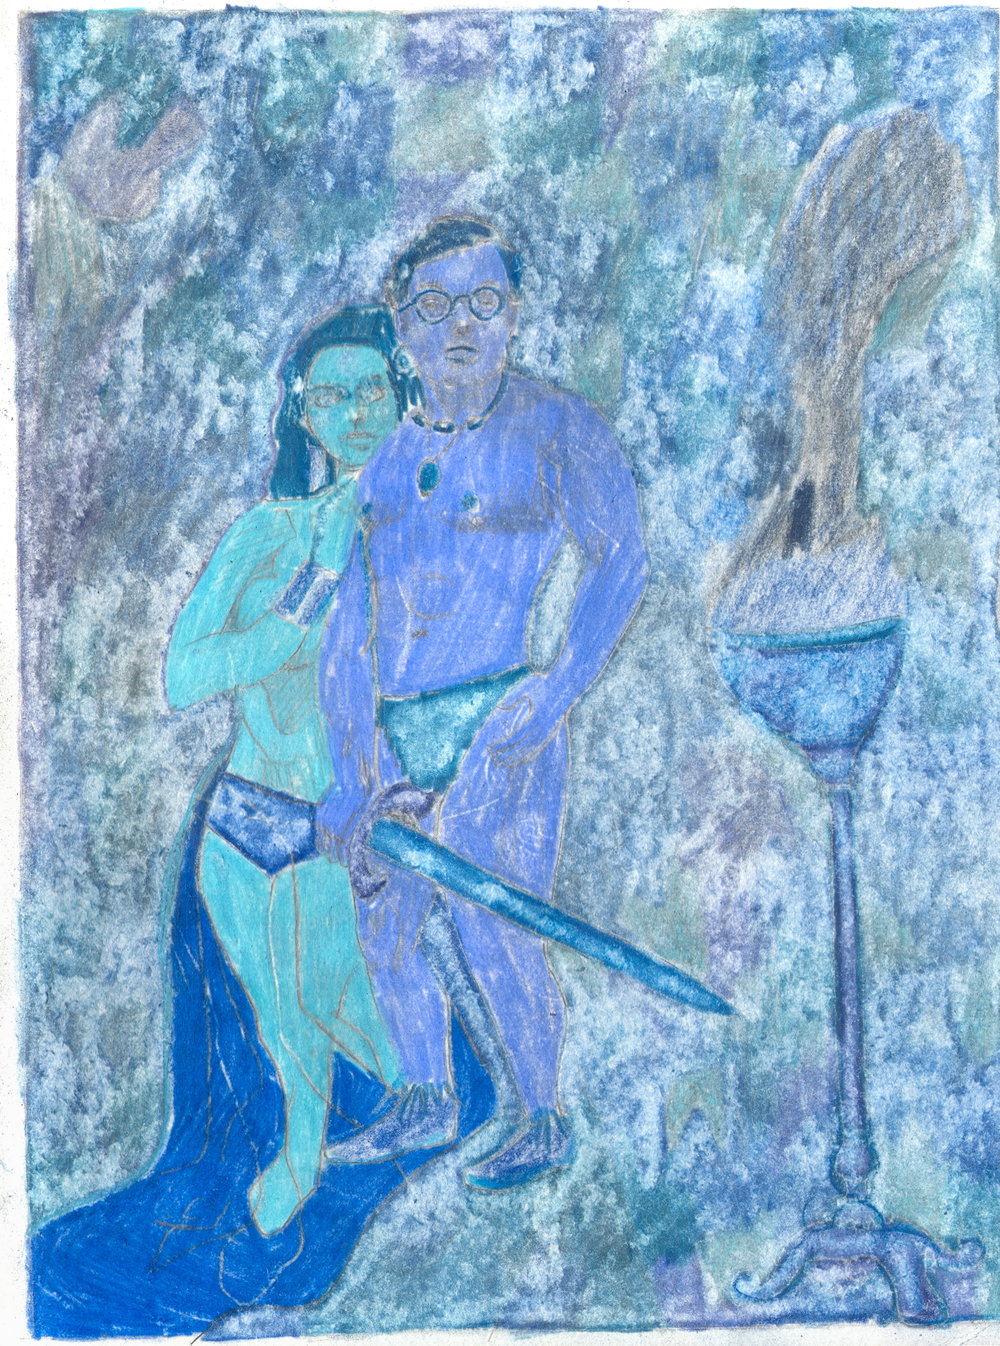  O.T. ( Selbstportrait als Conan der Barbar - Red-Phase ), 2019  Bleistift Buntstift auf Papier, 26x35.5cm 